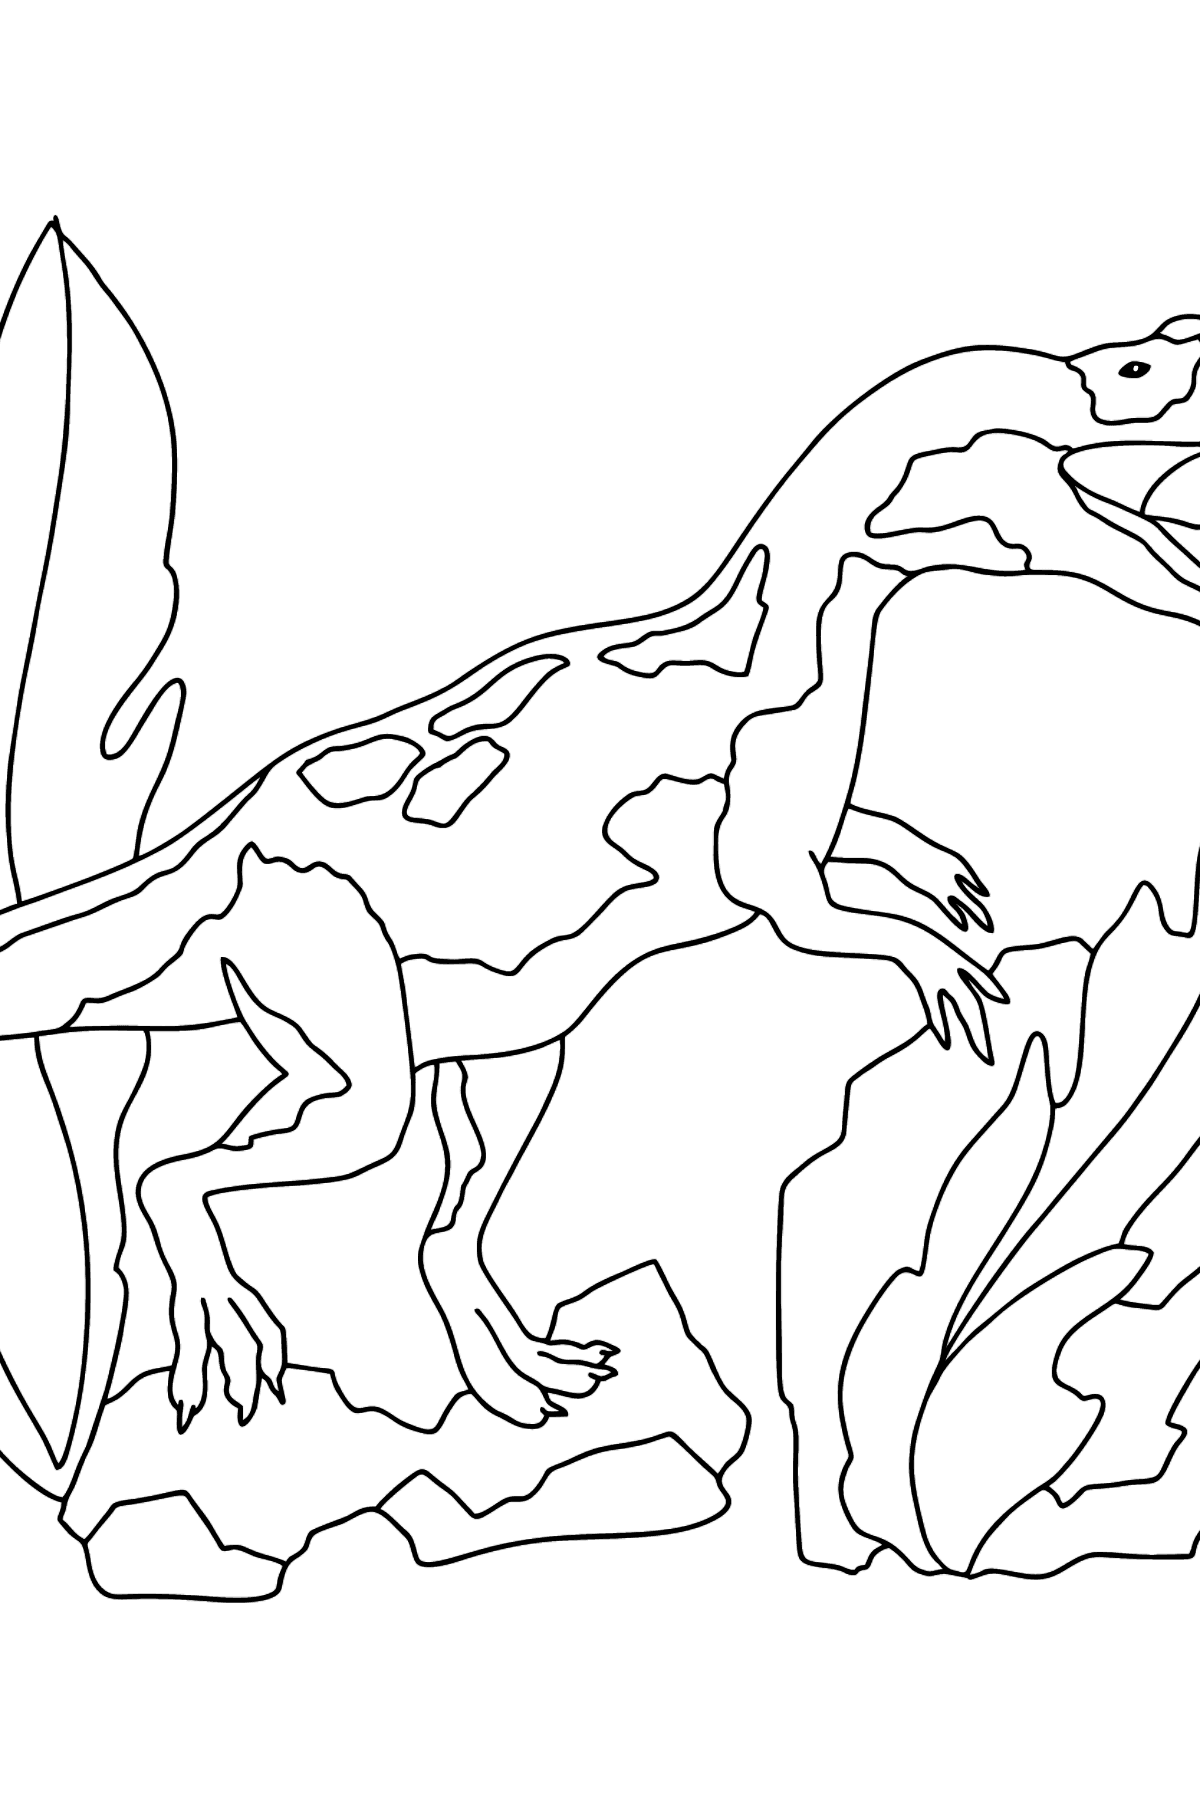 Boyama sayfası jurassic dinozor (zor) - Boyamalar çocuklar için